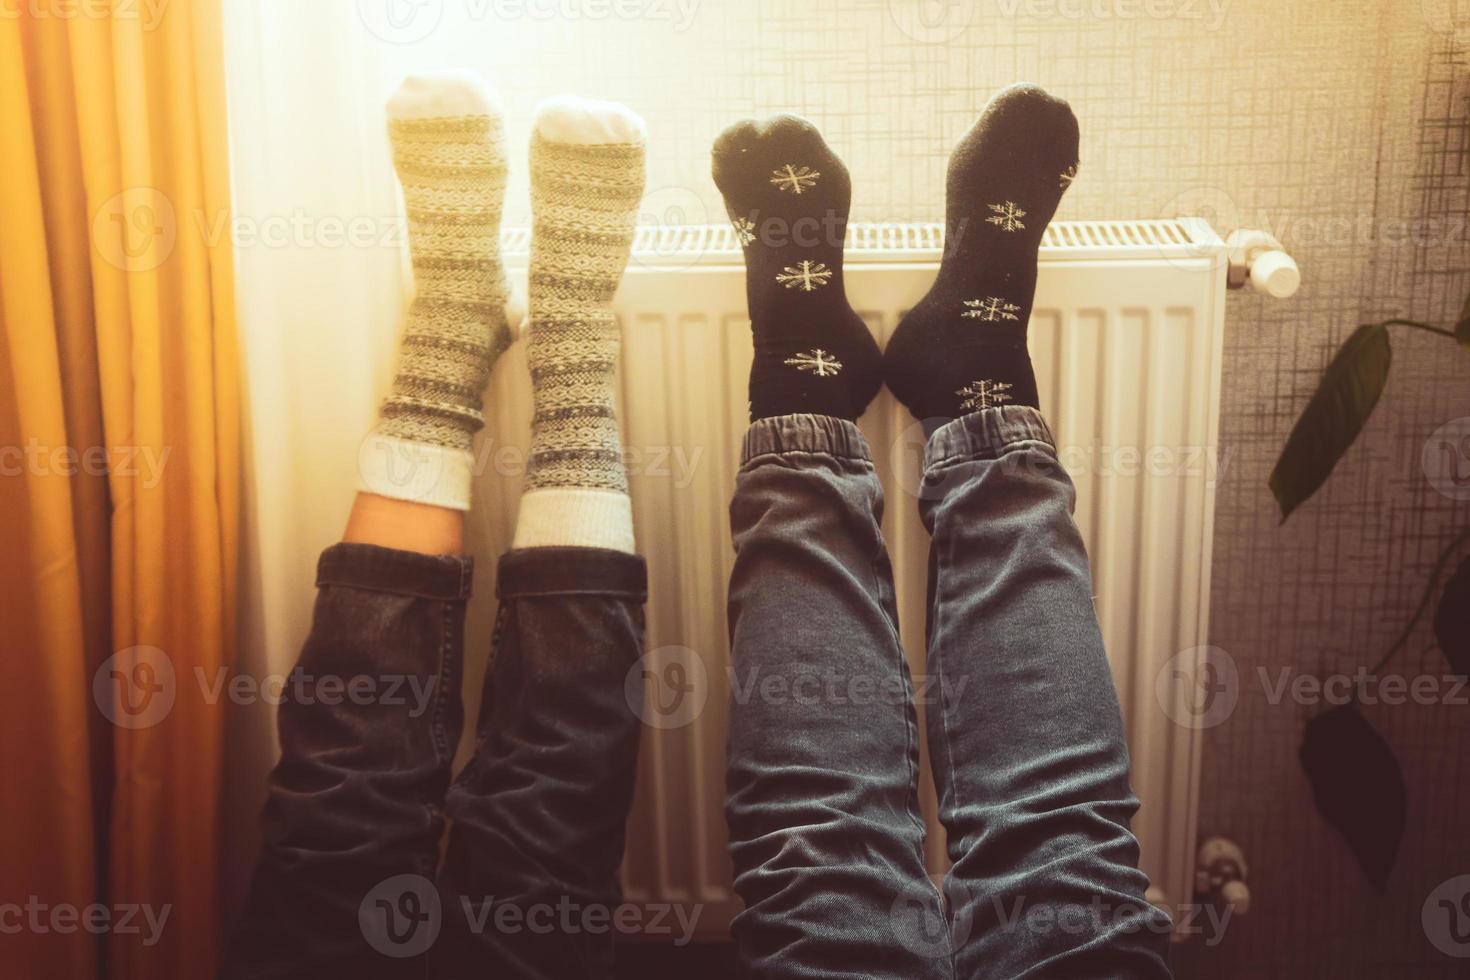 un couple tient les jambes en l'air chauffant les pieds dans une maison froide à l'intérieur sur un radiateur en hiver avec des chaussettes en laine élégantes pour l'hiver. valentines drôle ensemble pieds chauds par radiateur par fenêtre photo